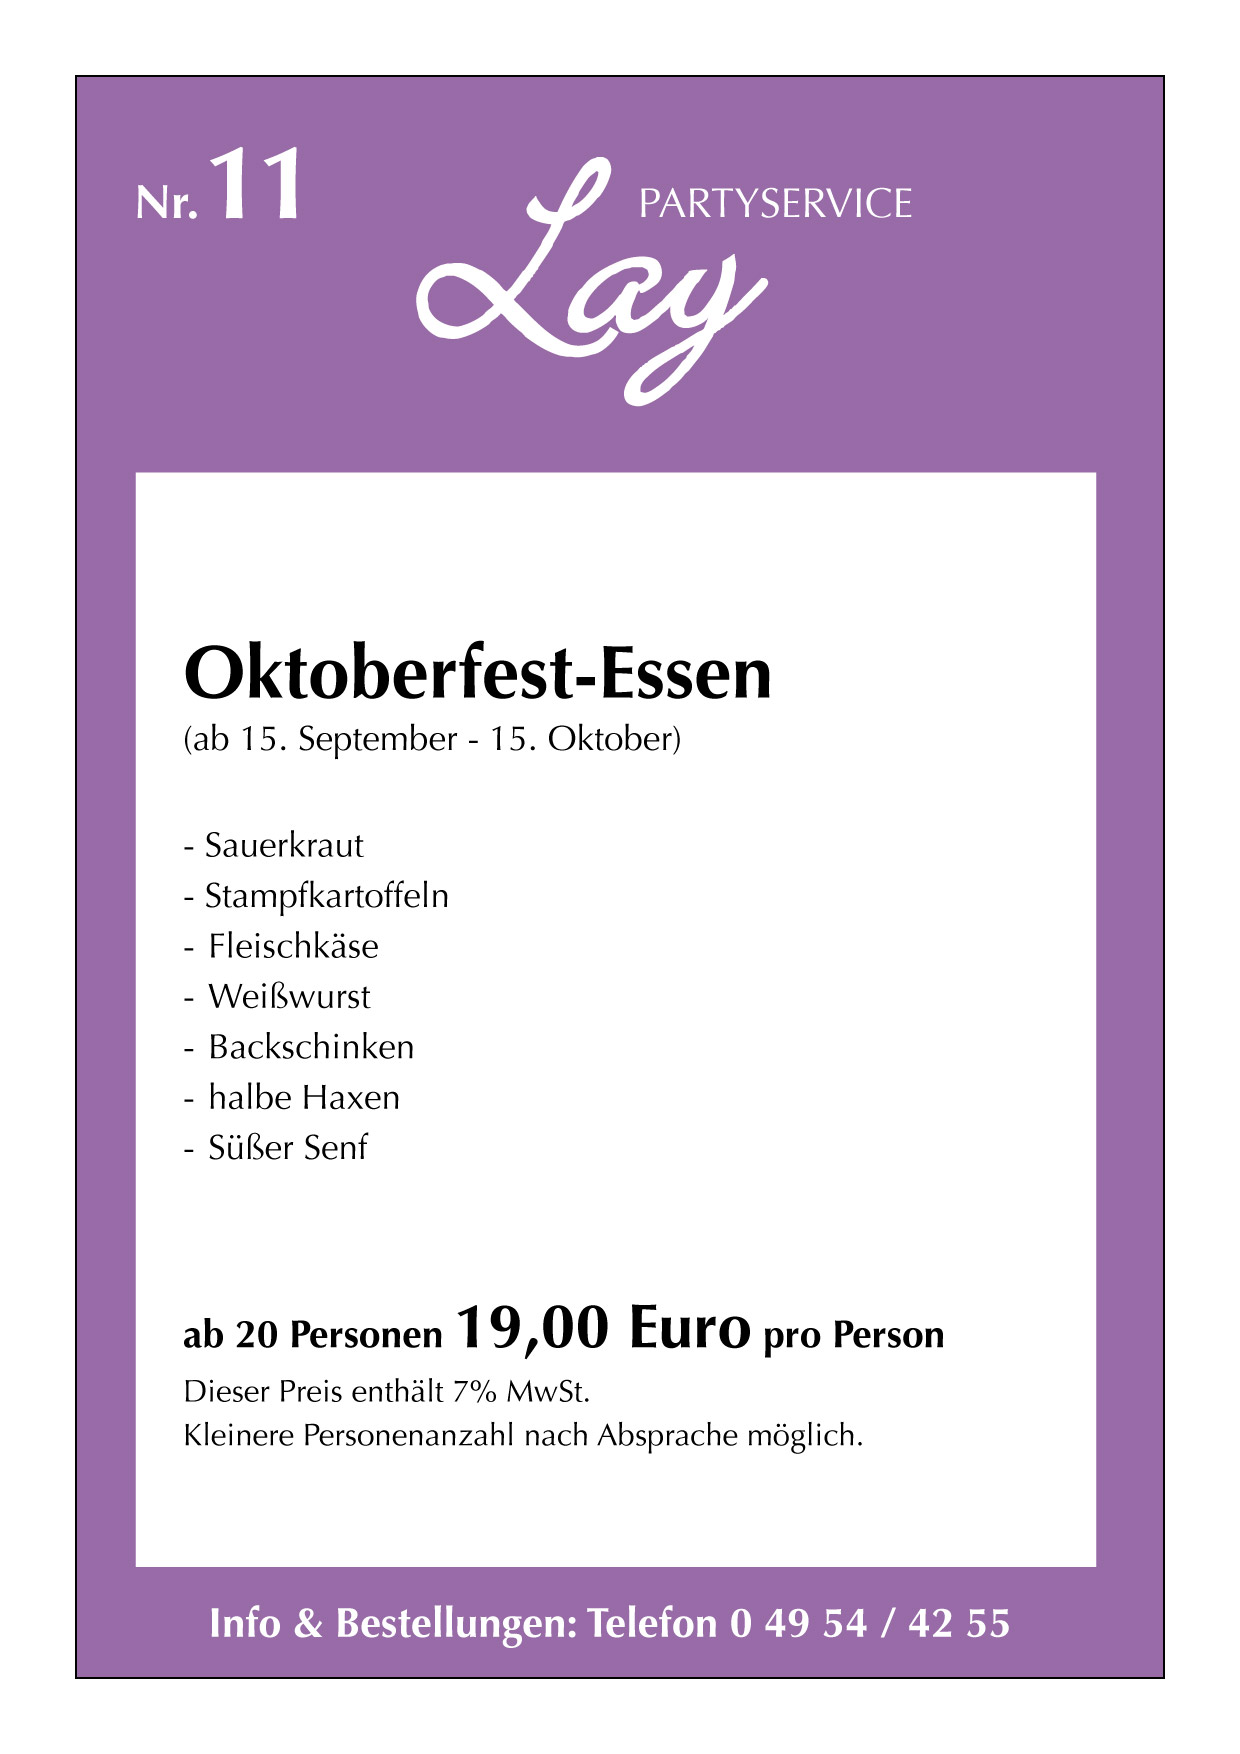 LAY-PARTY-Oktoberfest-Essen